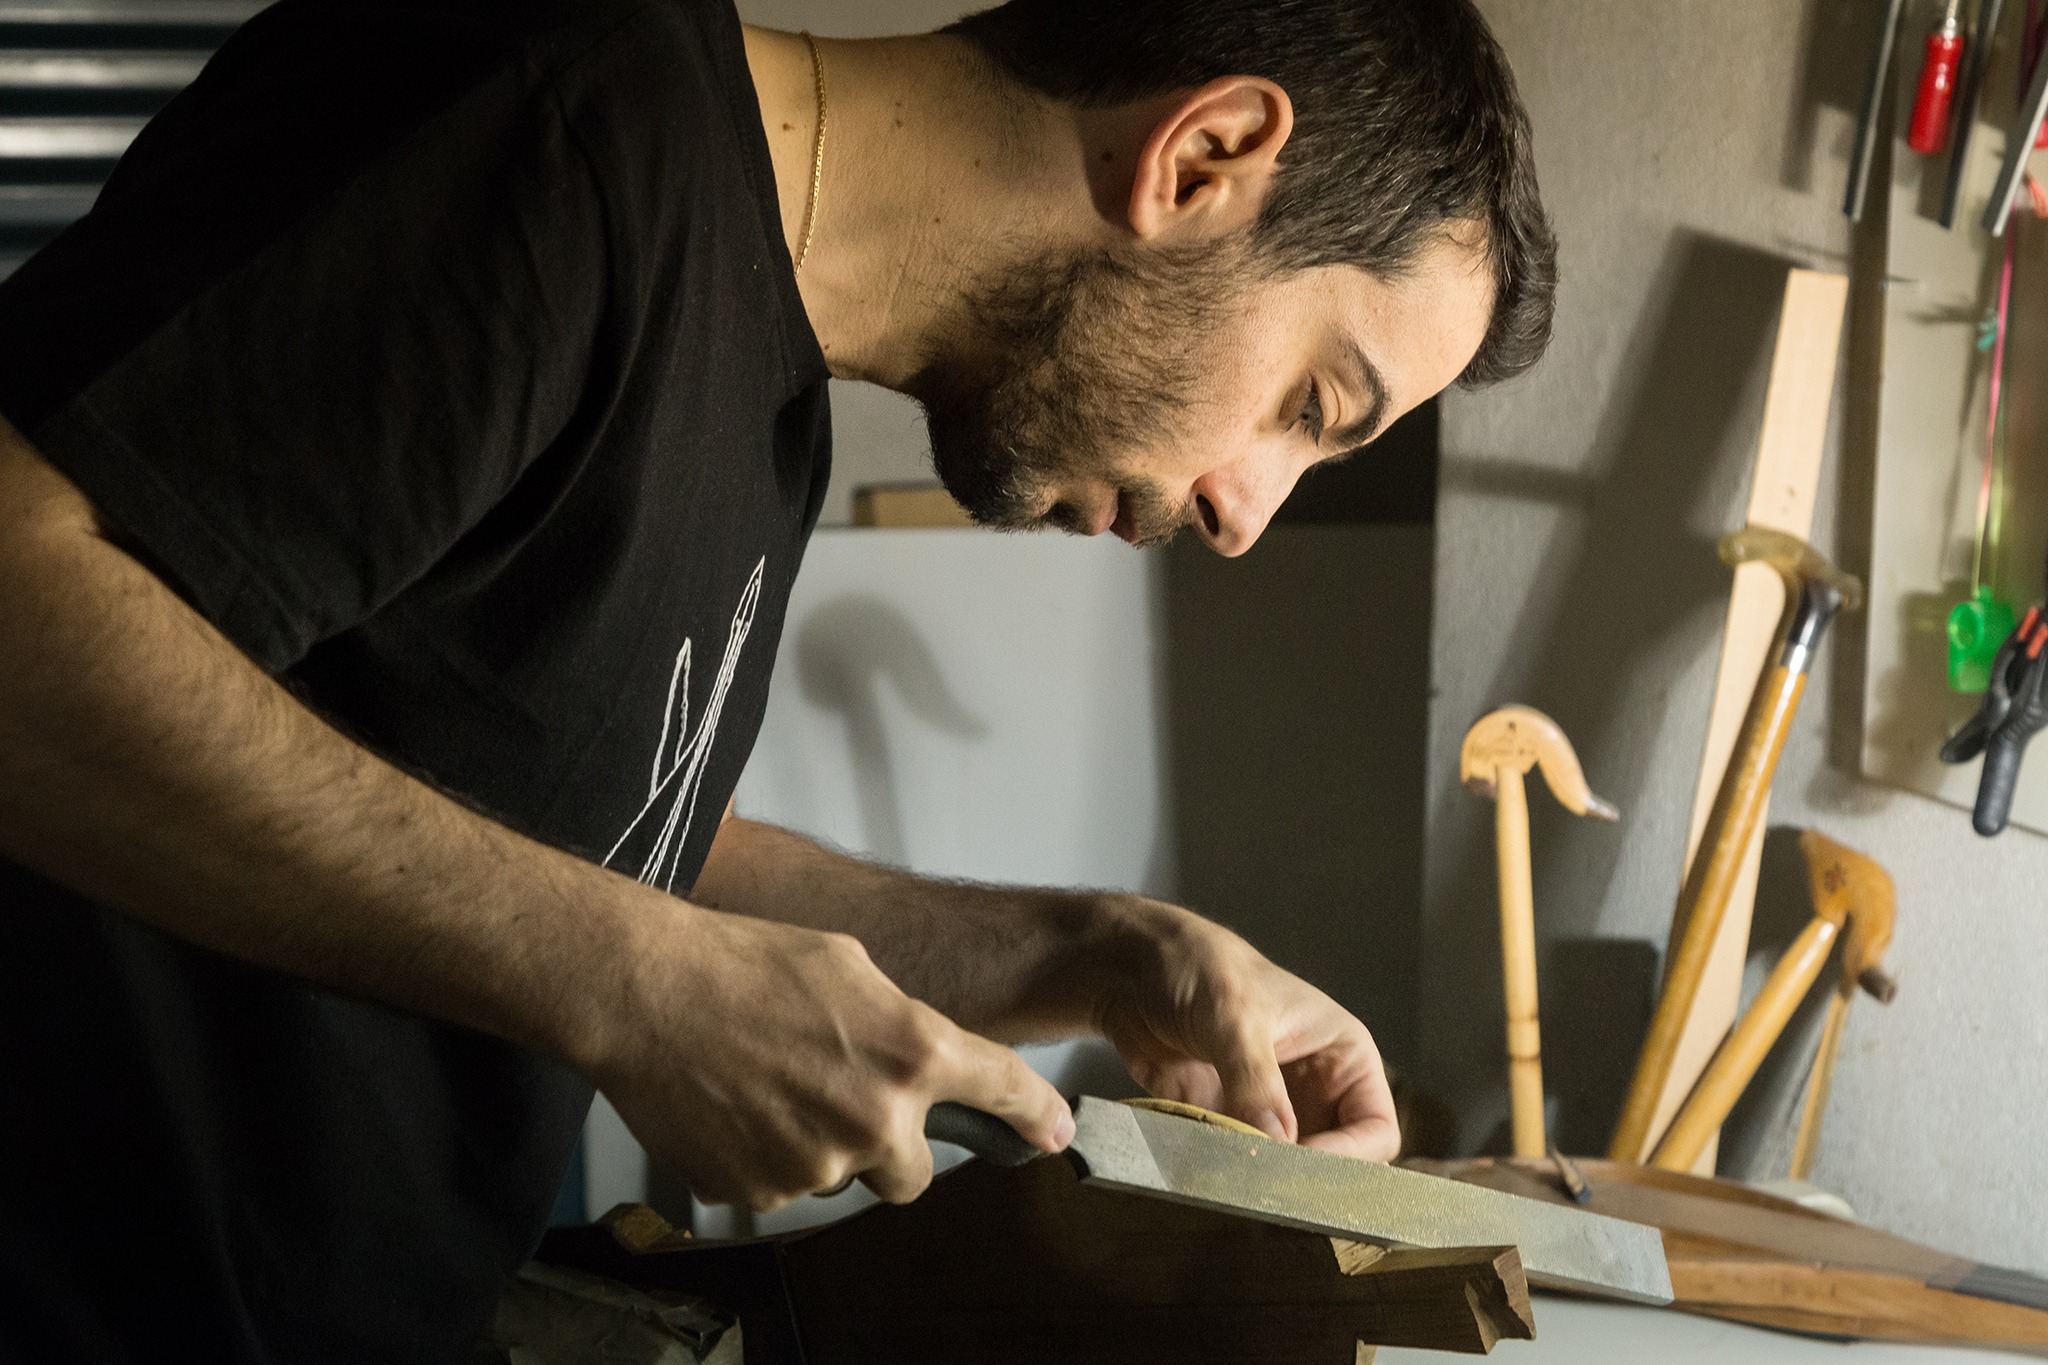 Αλέξανδρος Κοκκαλίδης: Ο Θρακιώτης λυράρης και χειροτέχνης στην κατασκευή της Λύρας (φωτος+video)